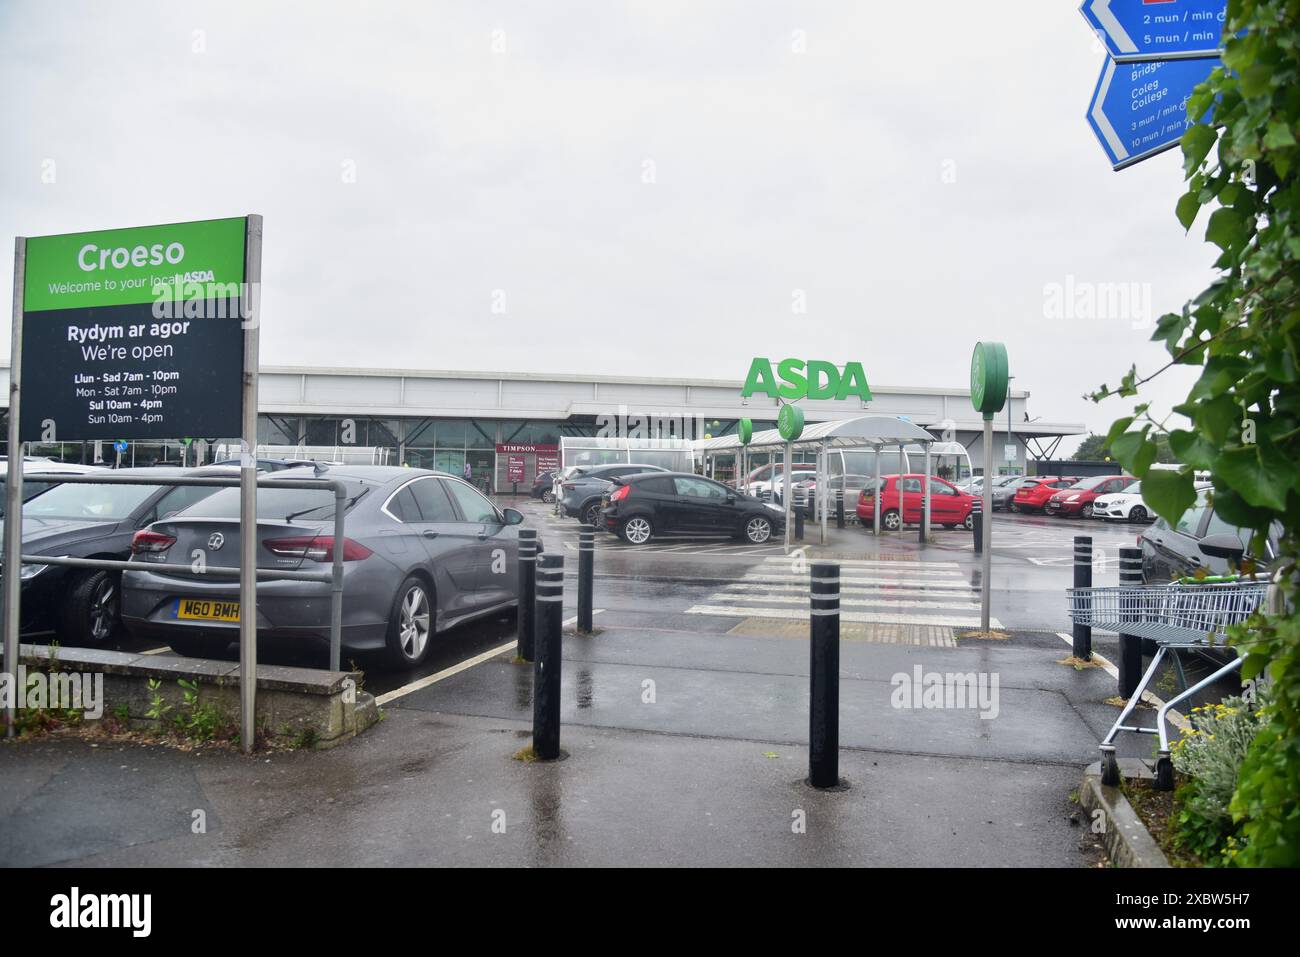 Die Bilder zeigen, dass der Asda Supermarkt Bridgend ein britischer Supermarkt ist. Er verkauft Lebensmittel, Kleidung, Spielzeug und allgemeine Waren zu sehr günstigen Preisen. Stockfoto